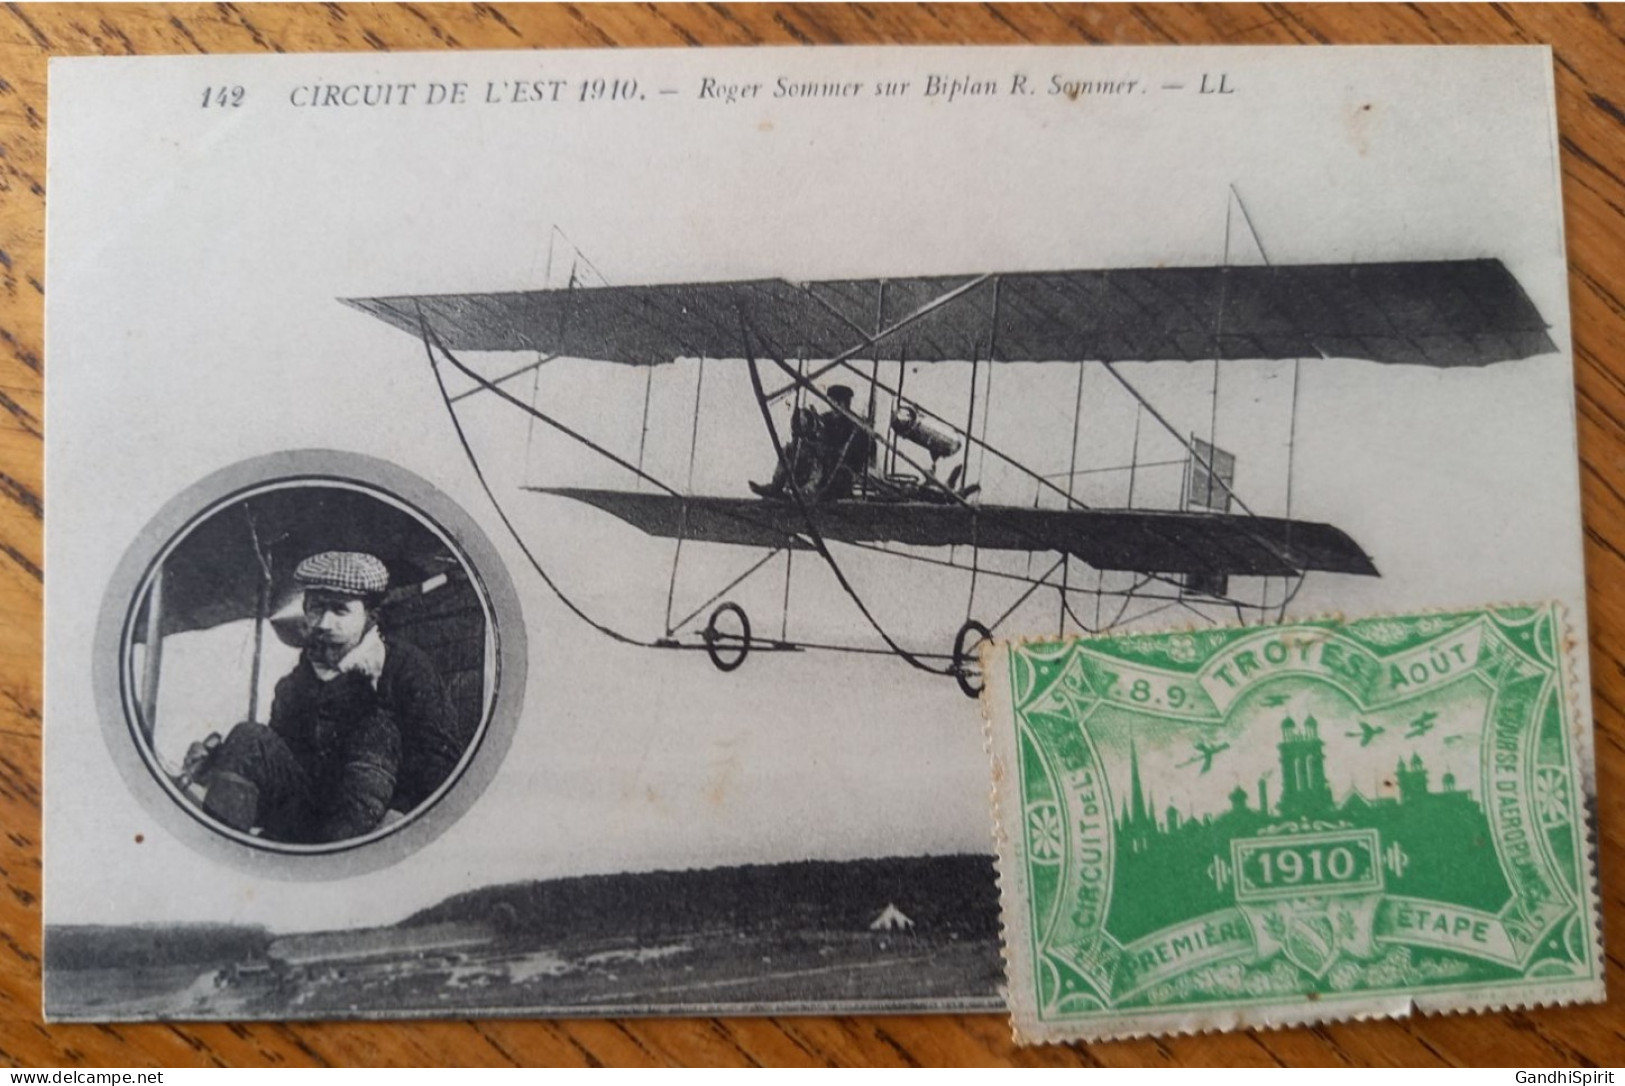 Errinophilie - Circuit De L'Est, Courses D'Aéroplanes, 1ère Première étape, Troyes 7.8.9. Aout 1910, Aviation - Luftfahrt